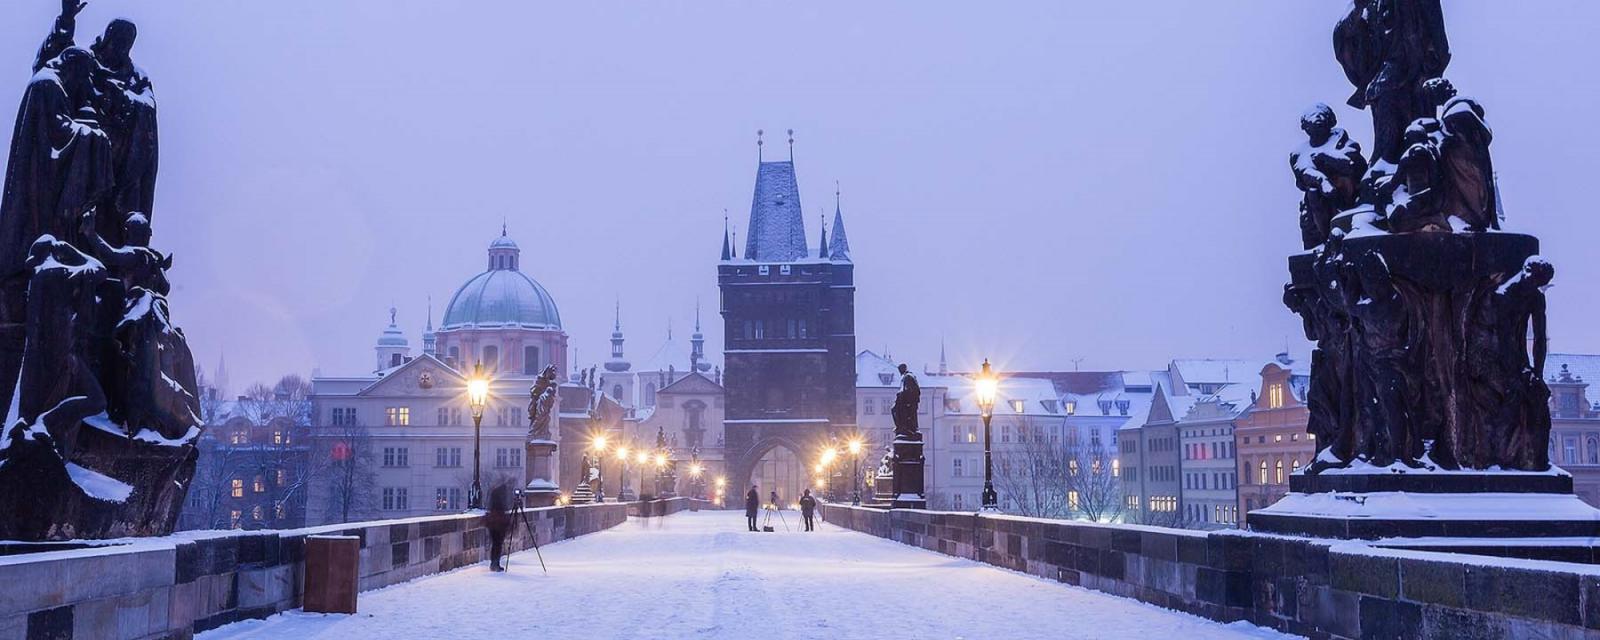 Ervaar de winter in Praag 